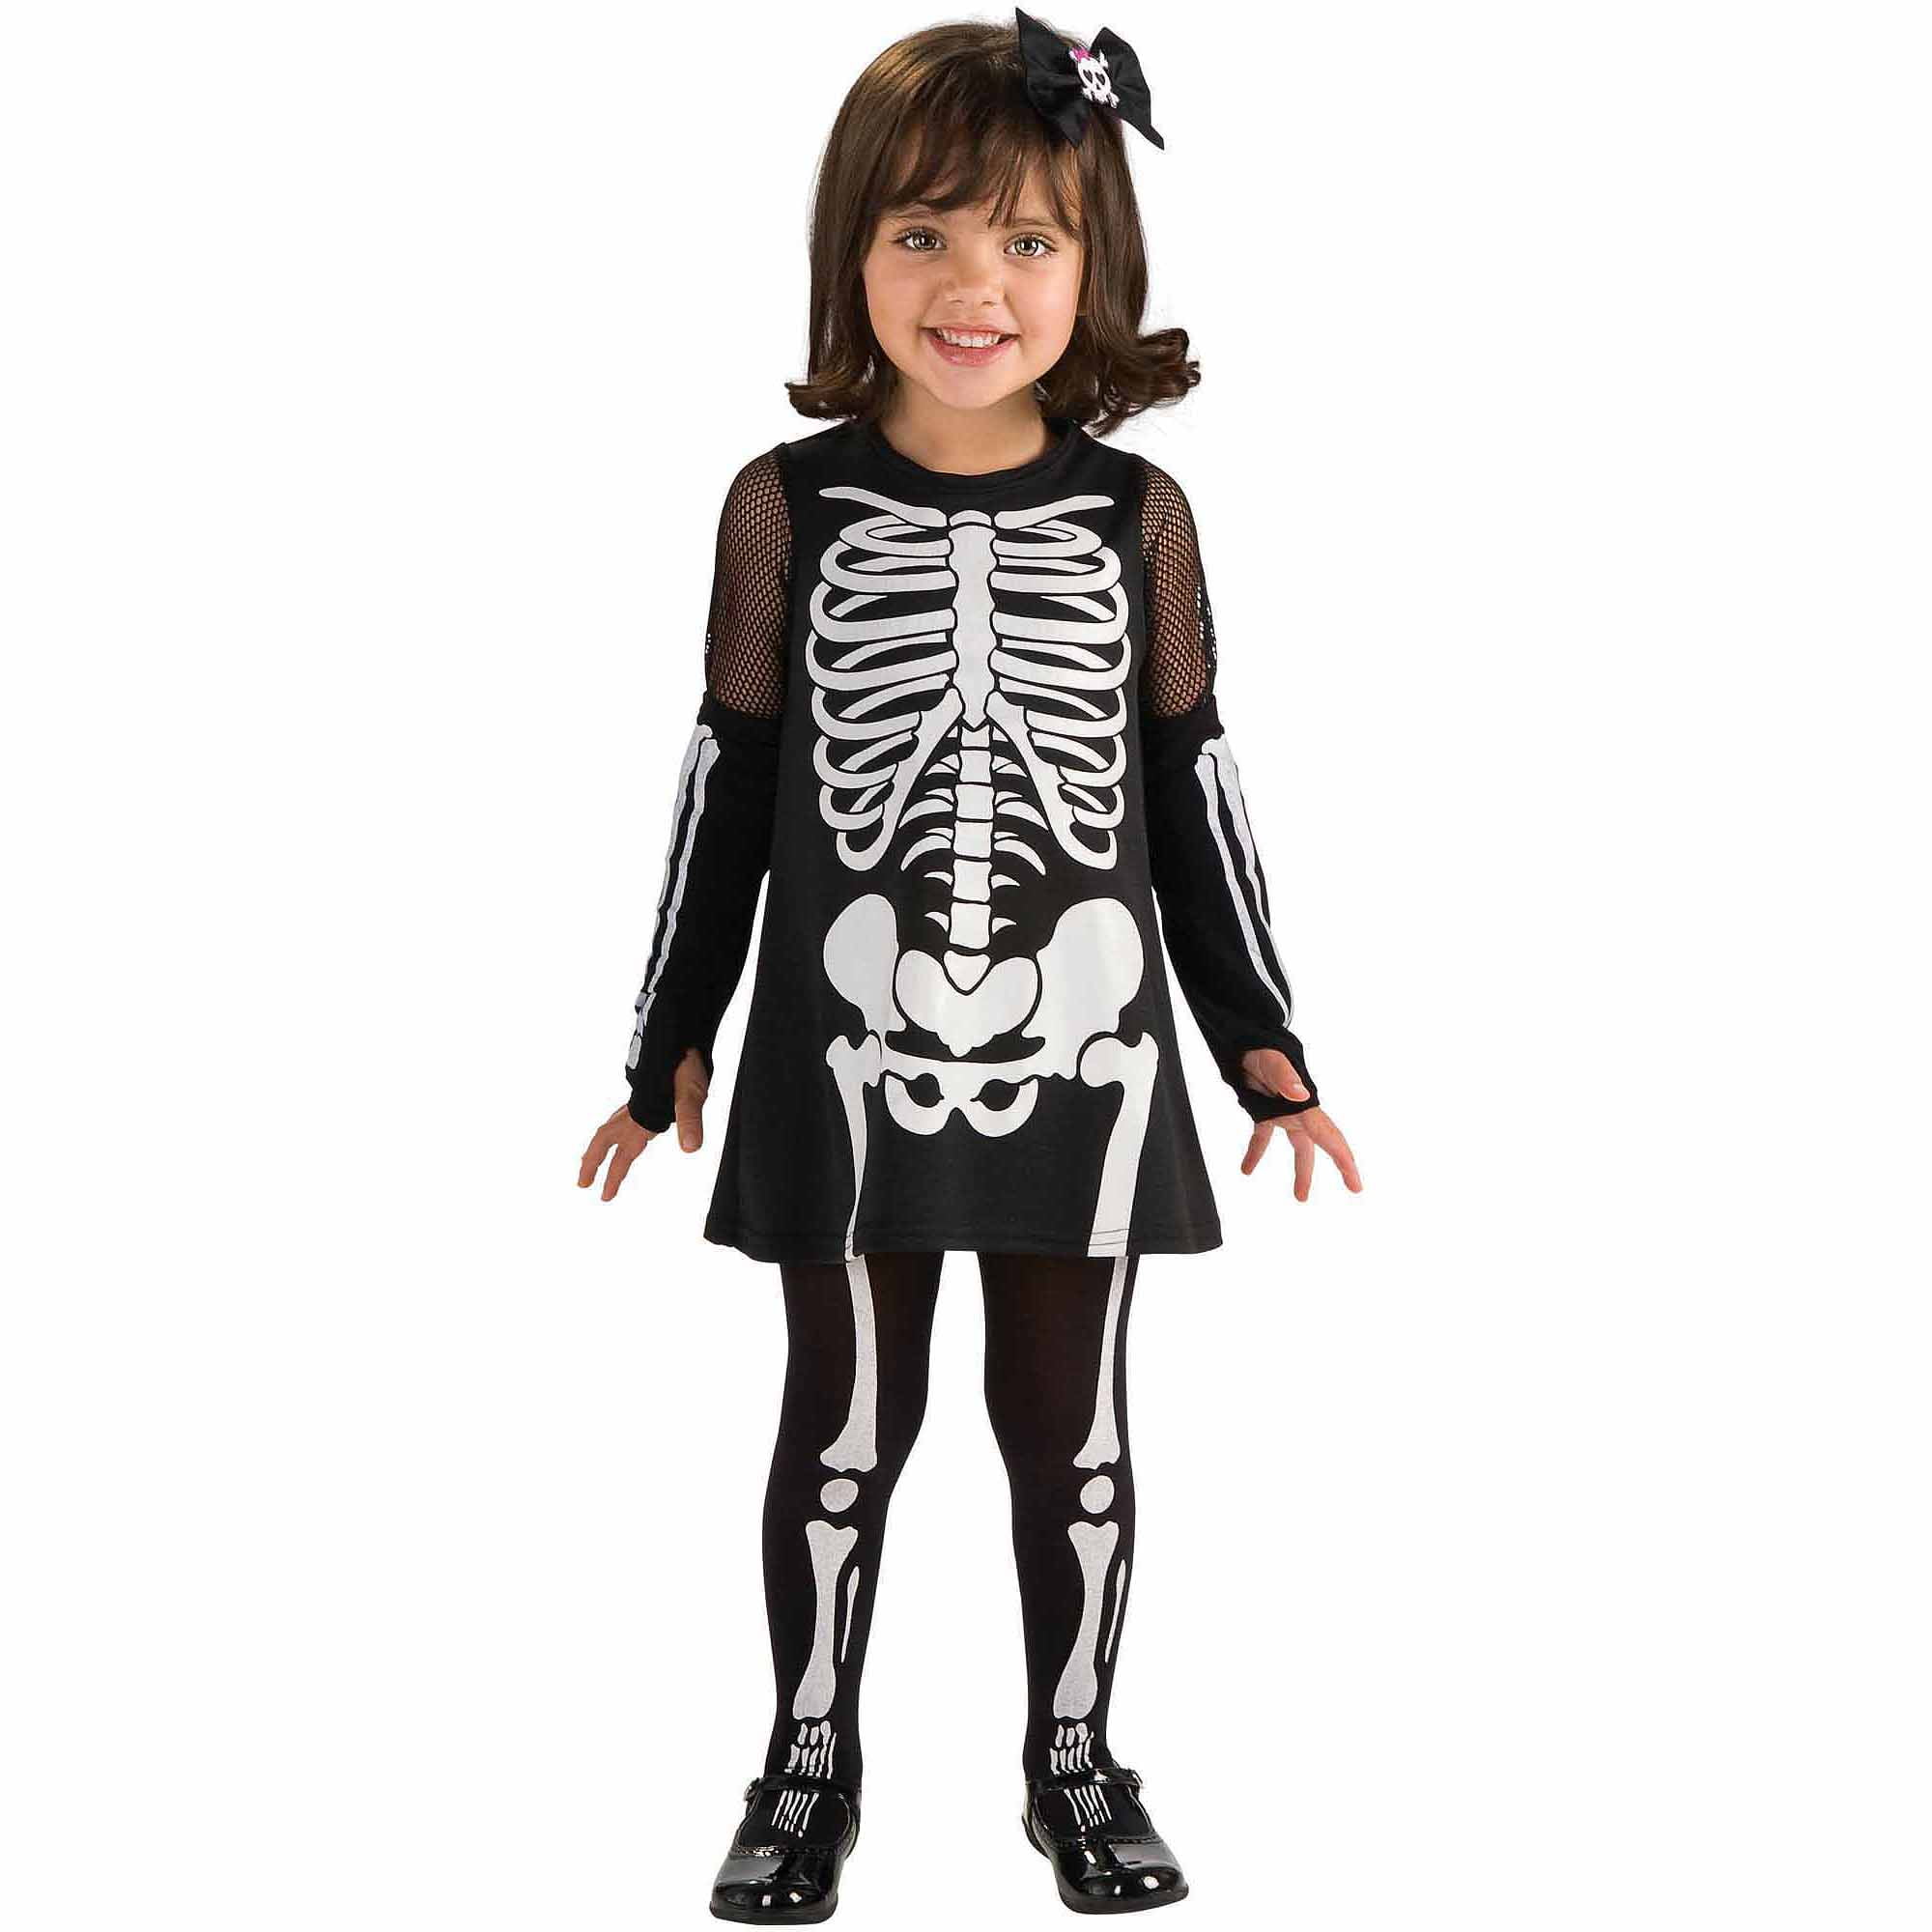 Toddler Skeleton Dress - Walmart.com - Walmart.com